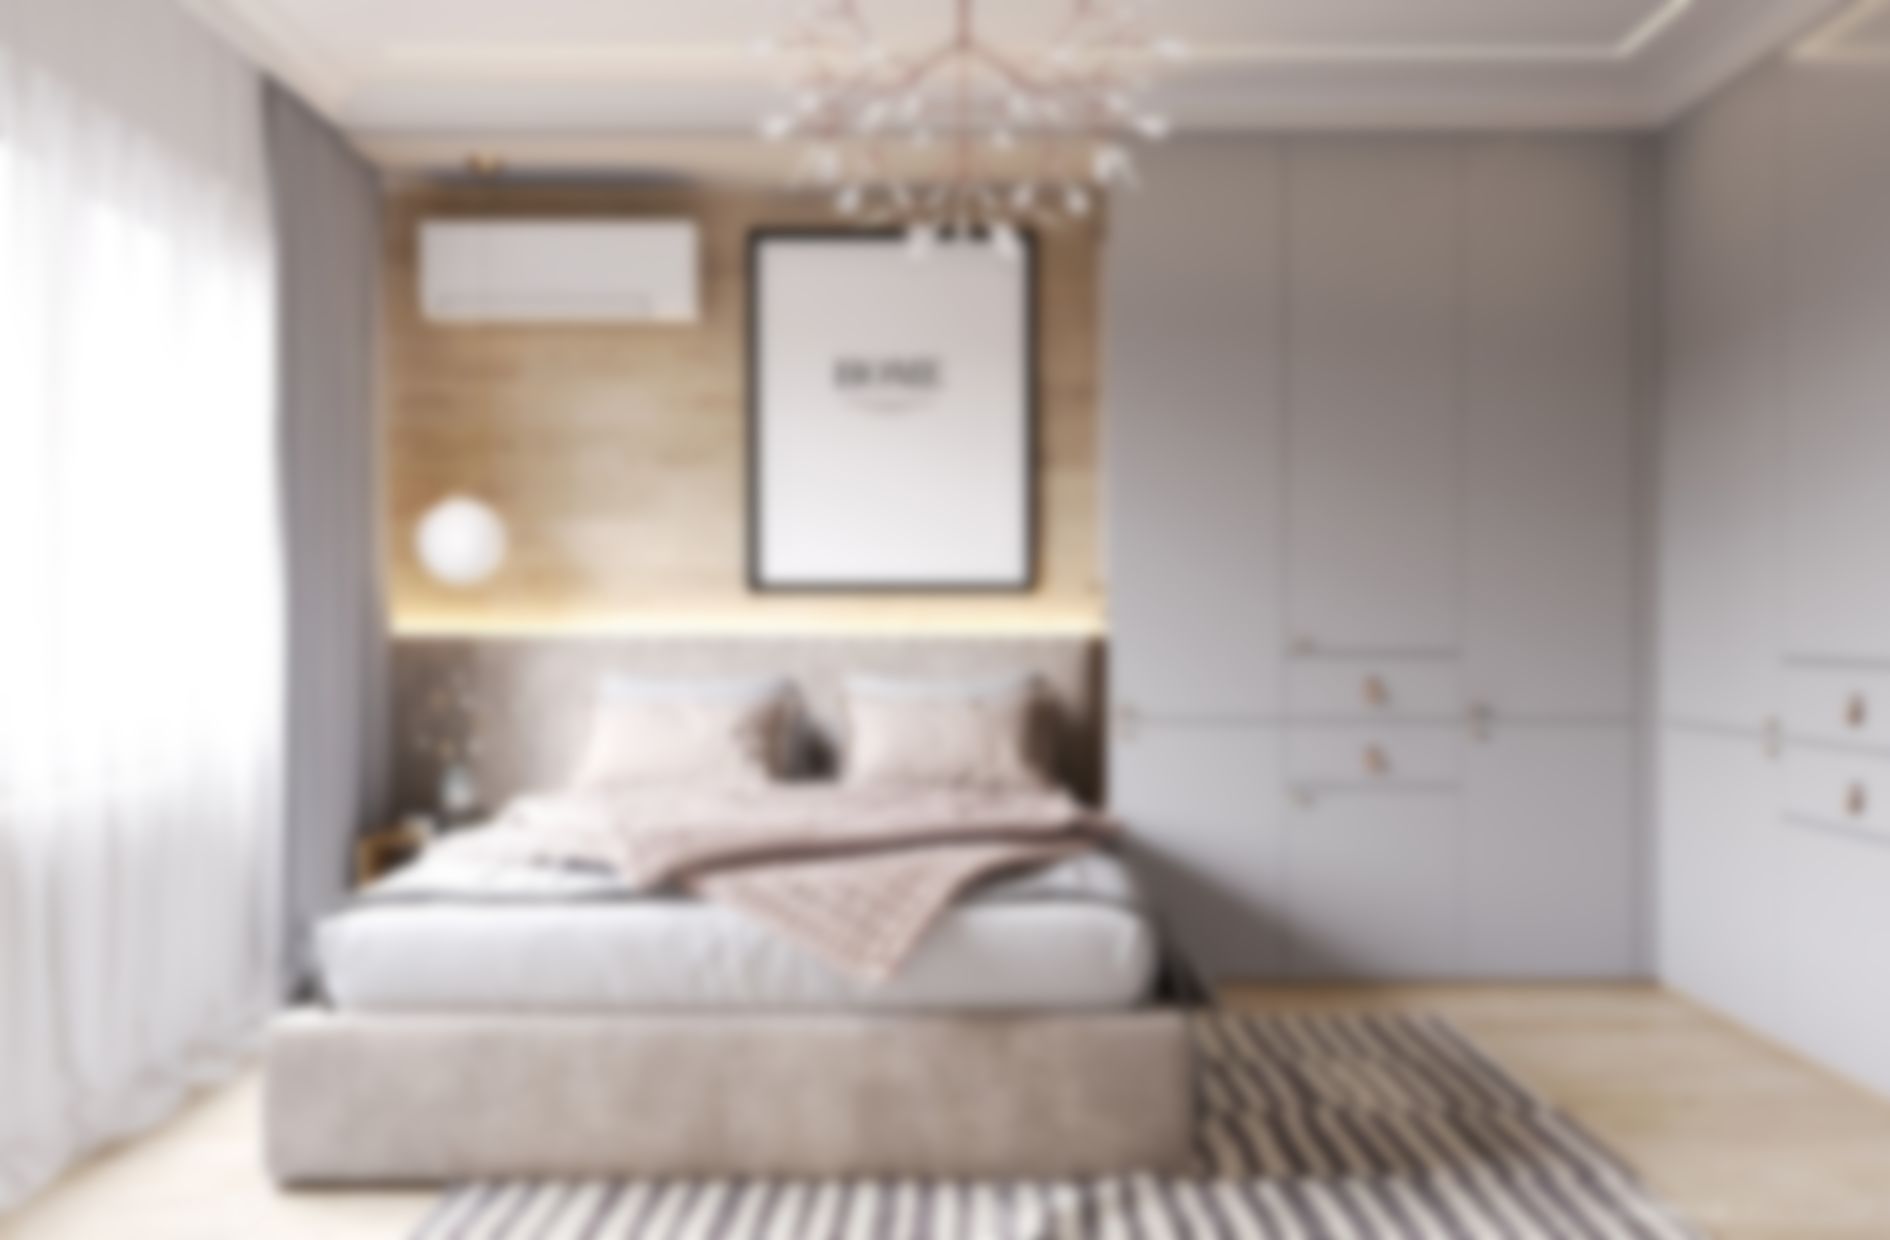 Модный дизайн спальни 2022 года — тренды и цвета интерьера